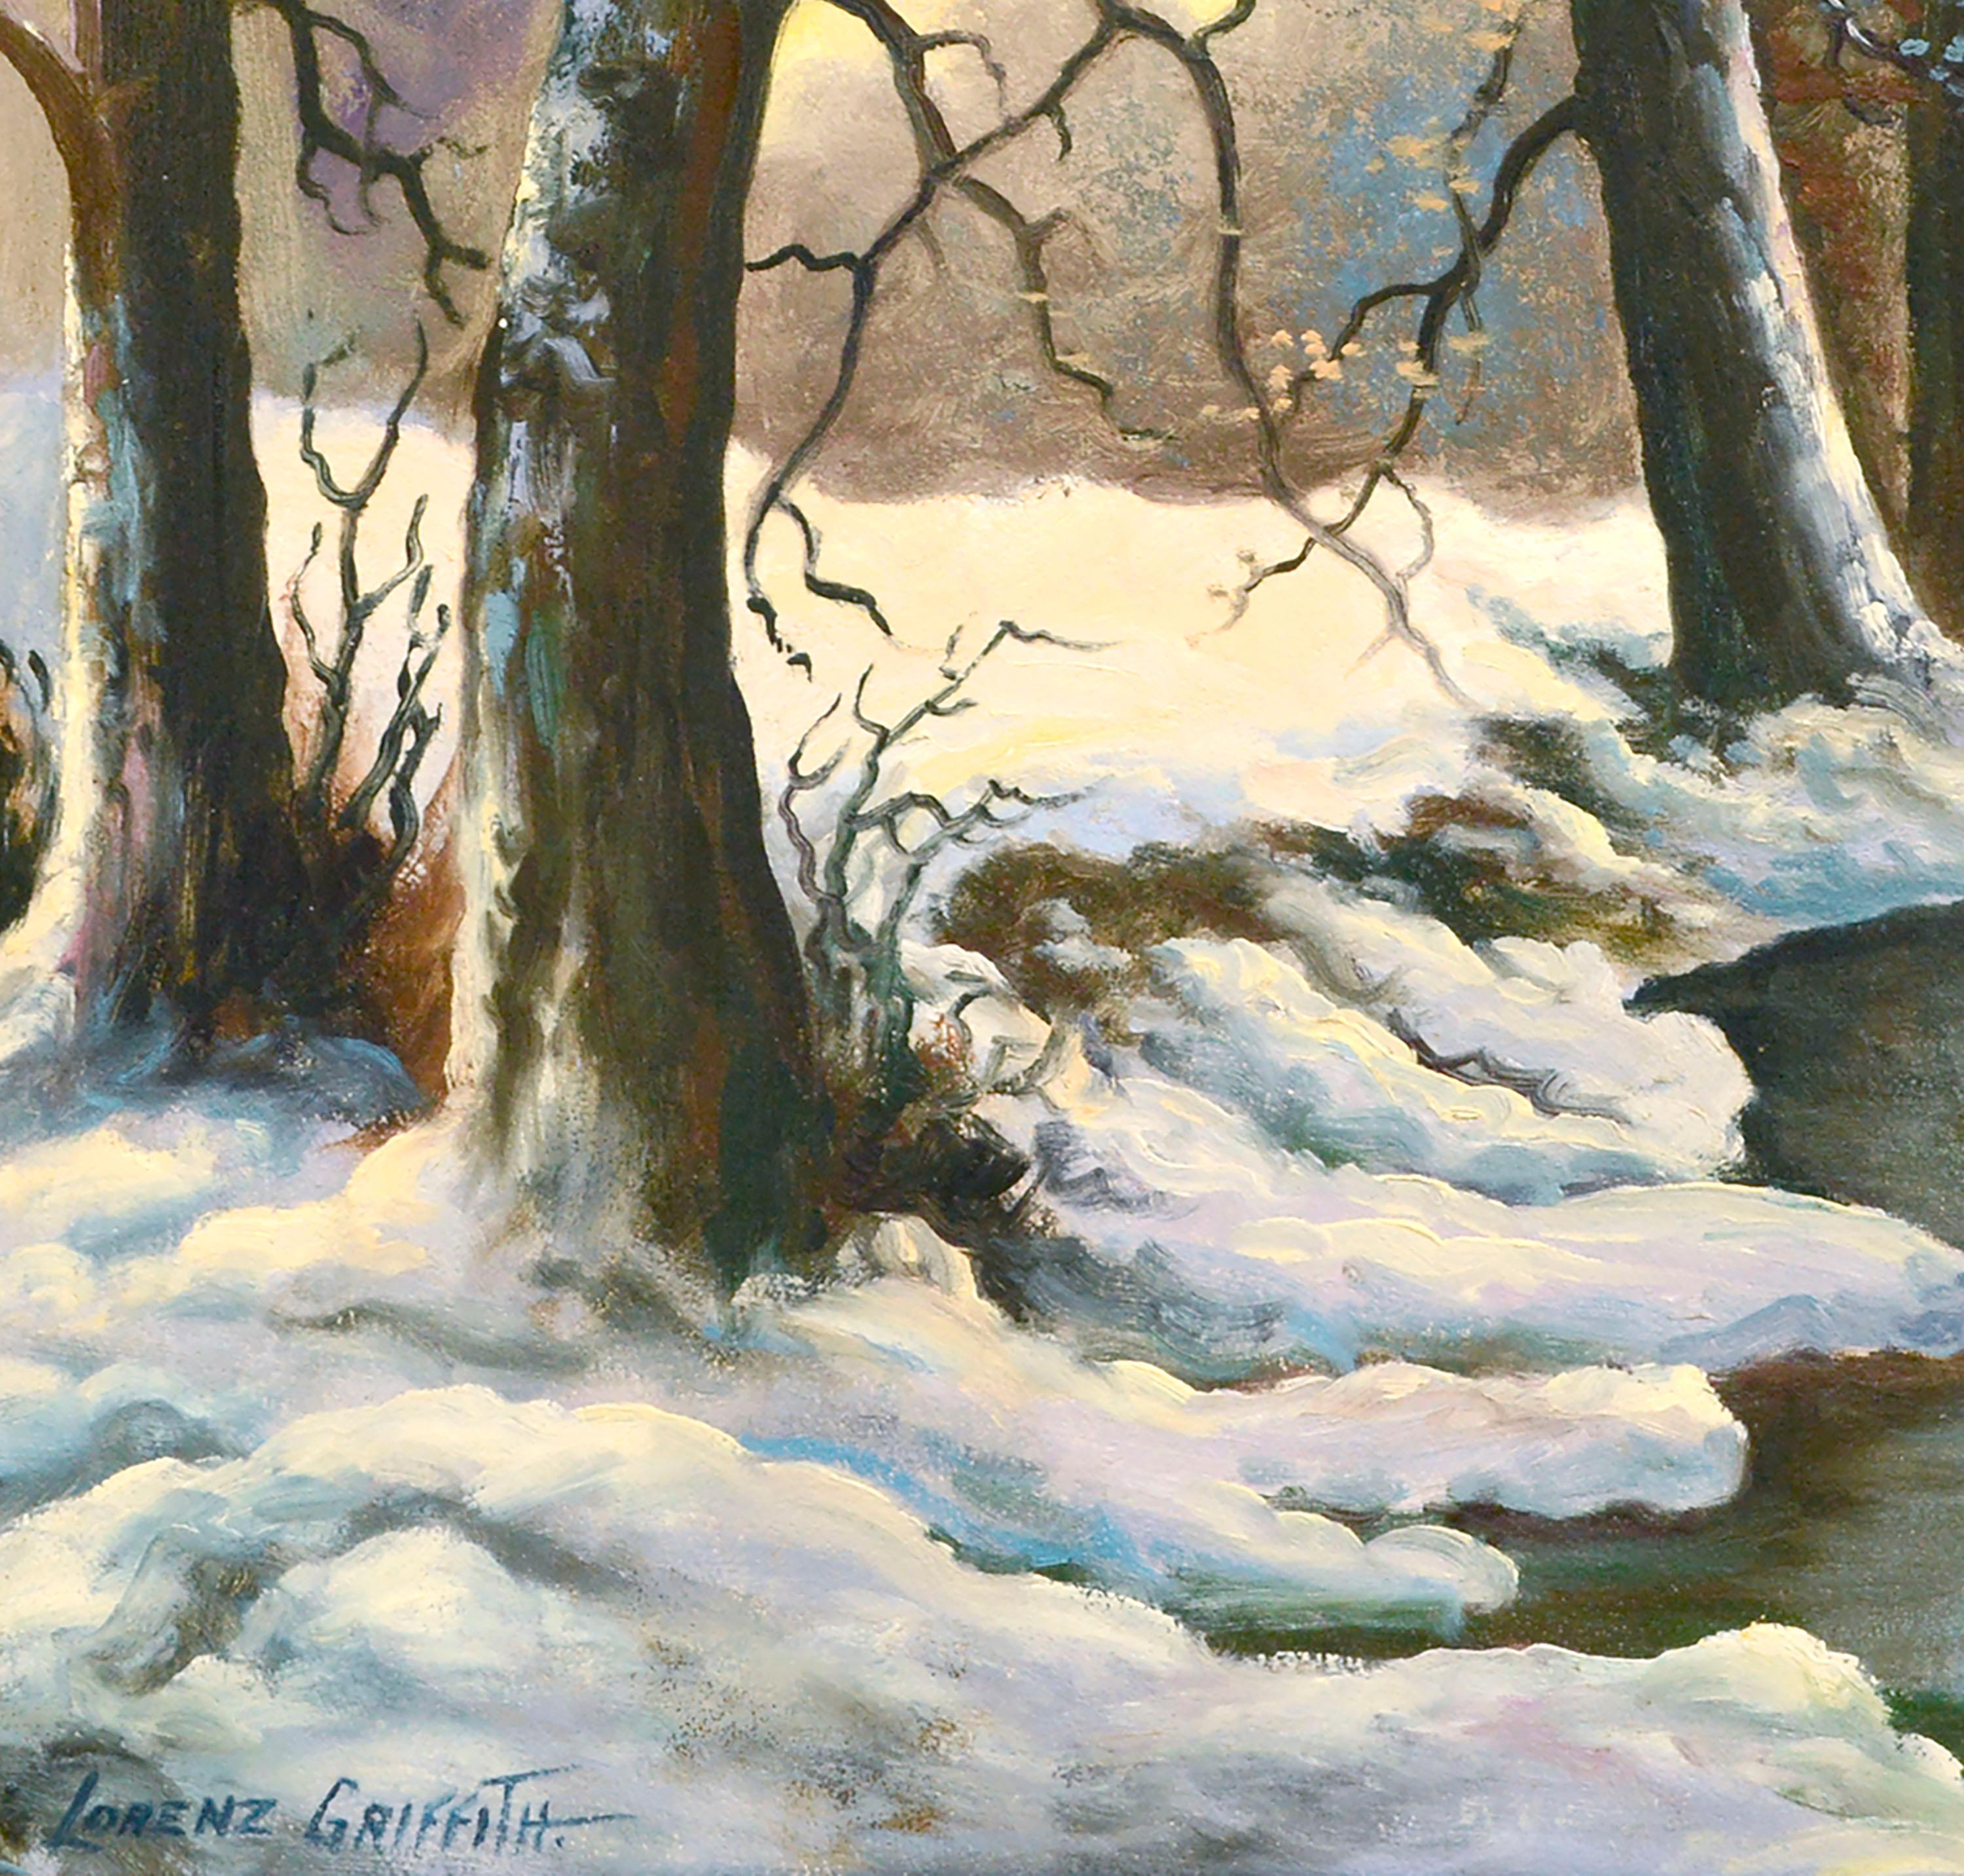 Friedliche Winterlandschaft mit einem ruhigen Bach, der sich durch einen verschneiten Wald schlängelt, von Lorenz Griffith (Amerikaner, 1889-1968). Signiert 